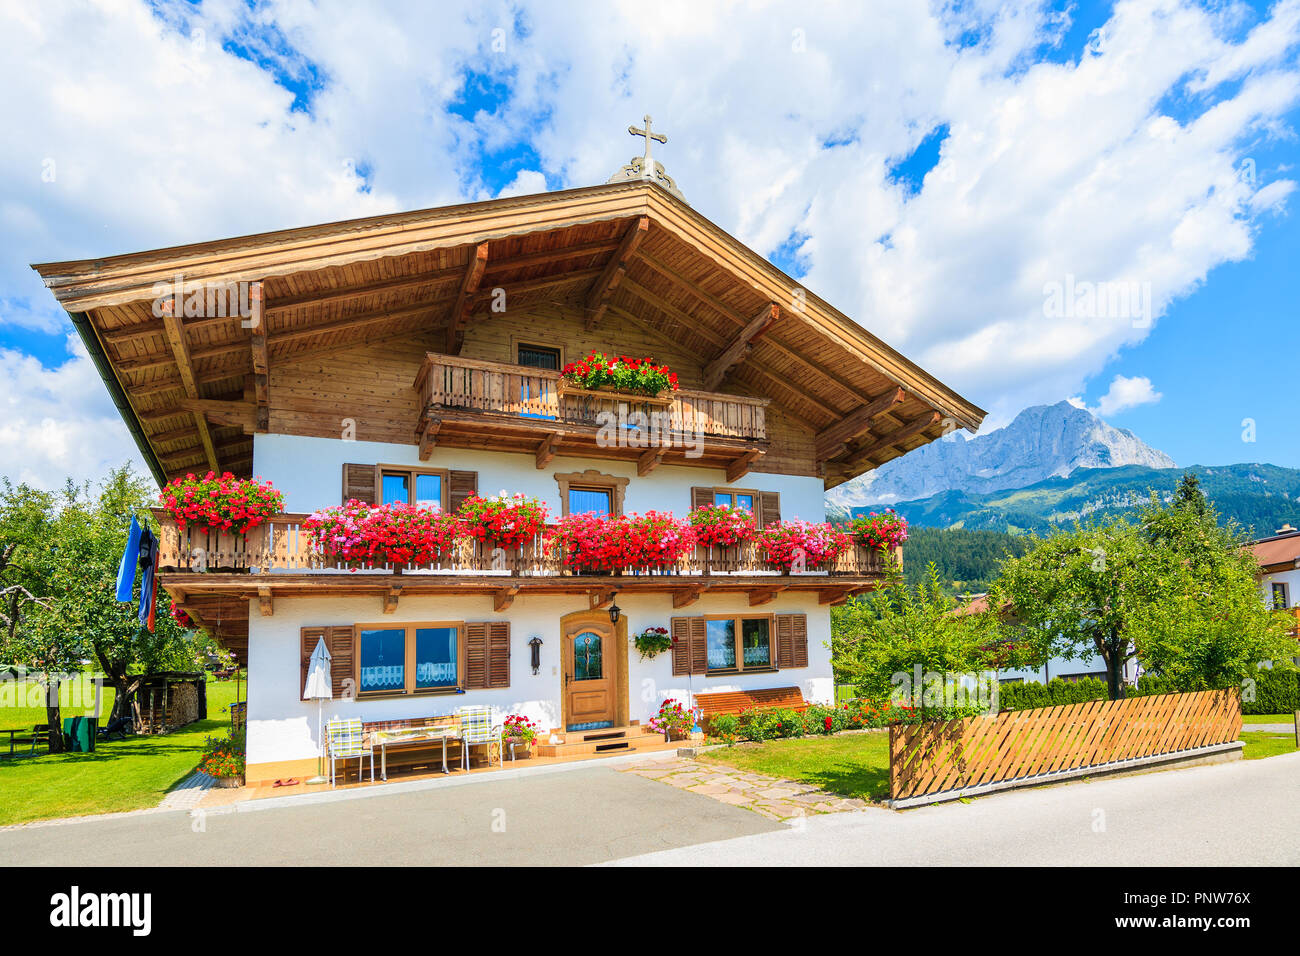 Casa alpina tradicional con balcones decorados con flores en ir am Wilden Kaiser Mountain Village, Alpes Kitzbuhel, Austria Foto de stock